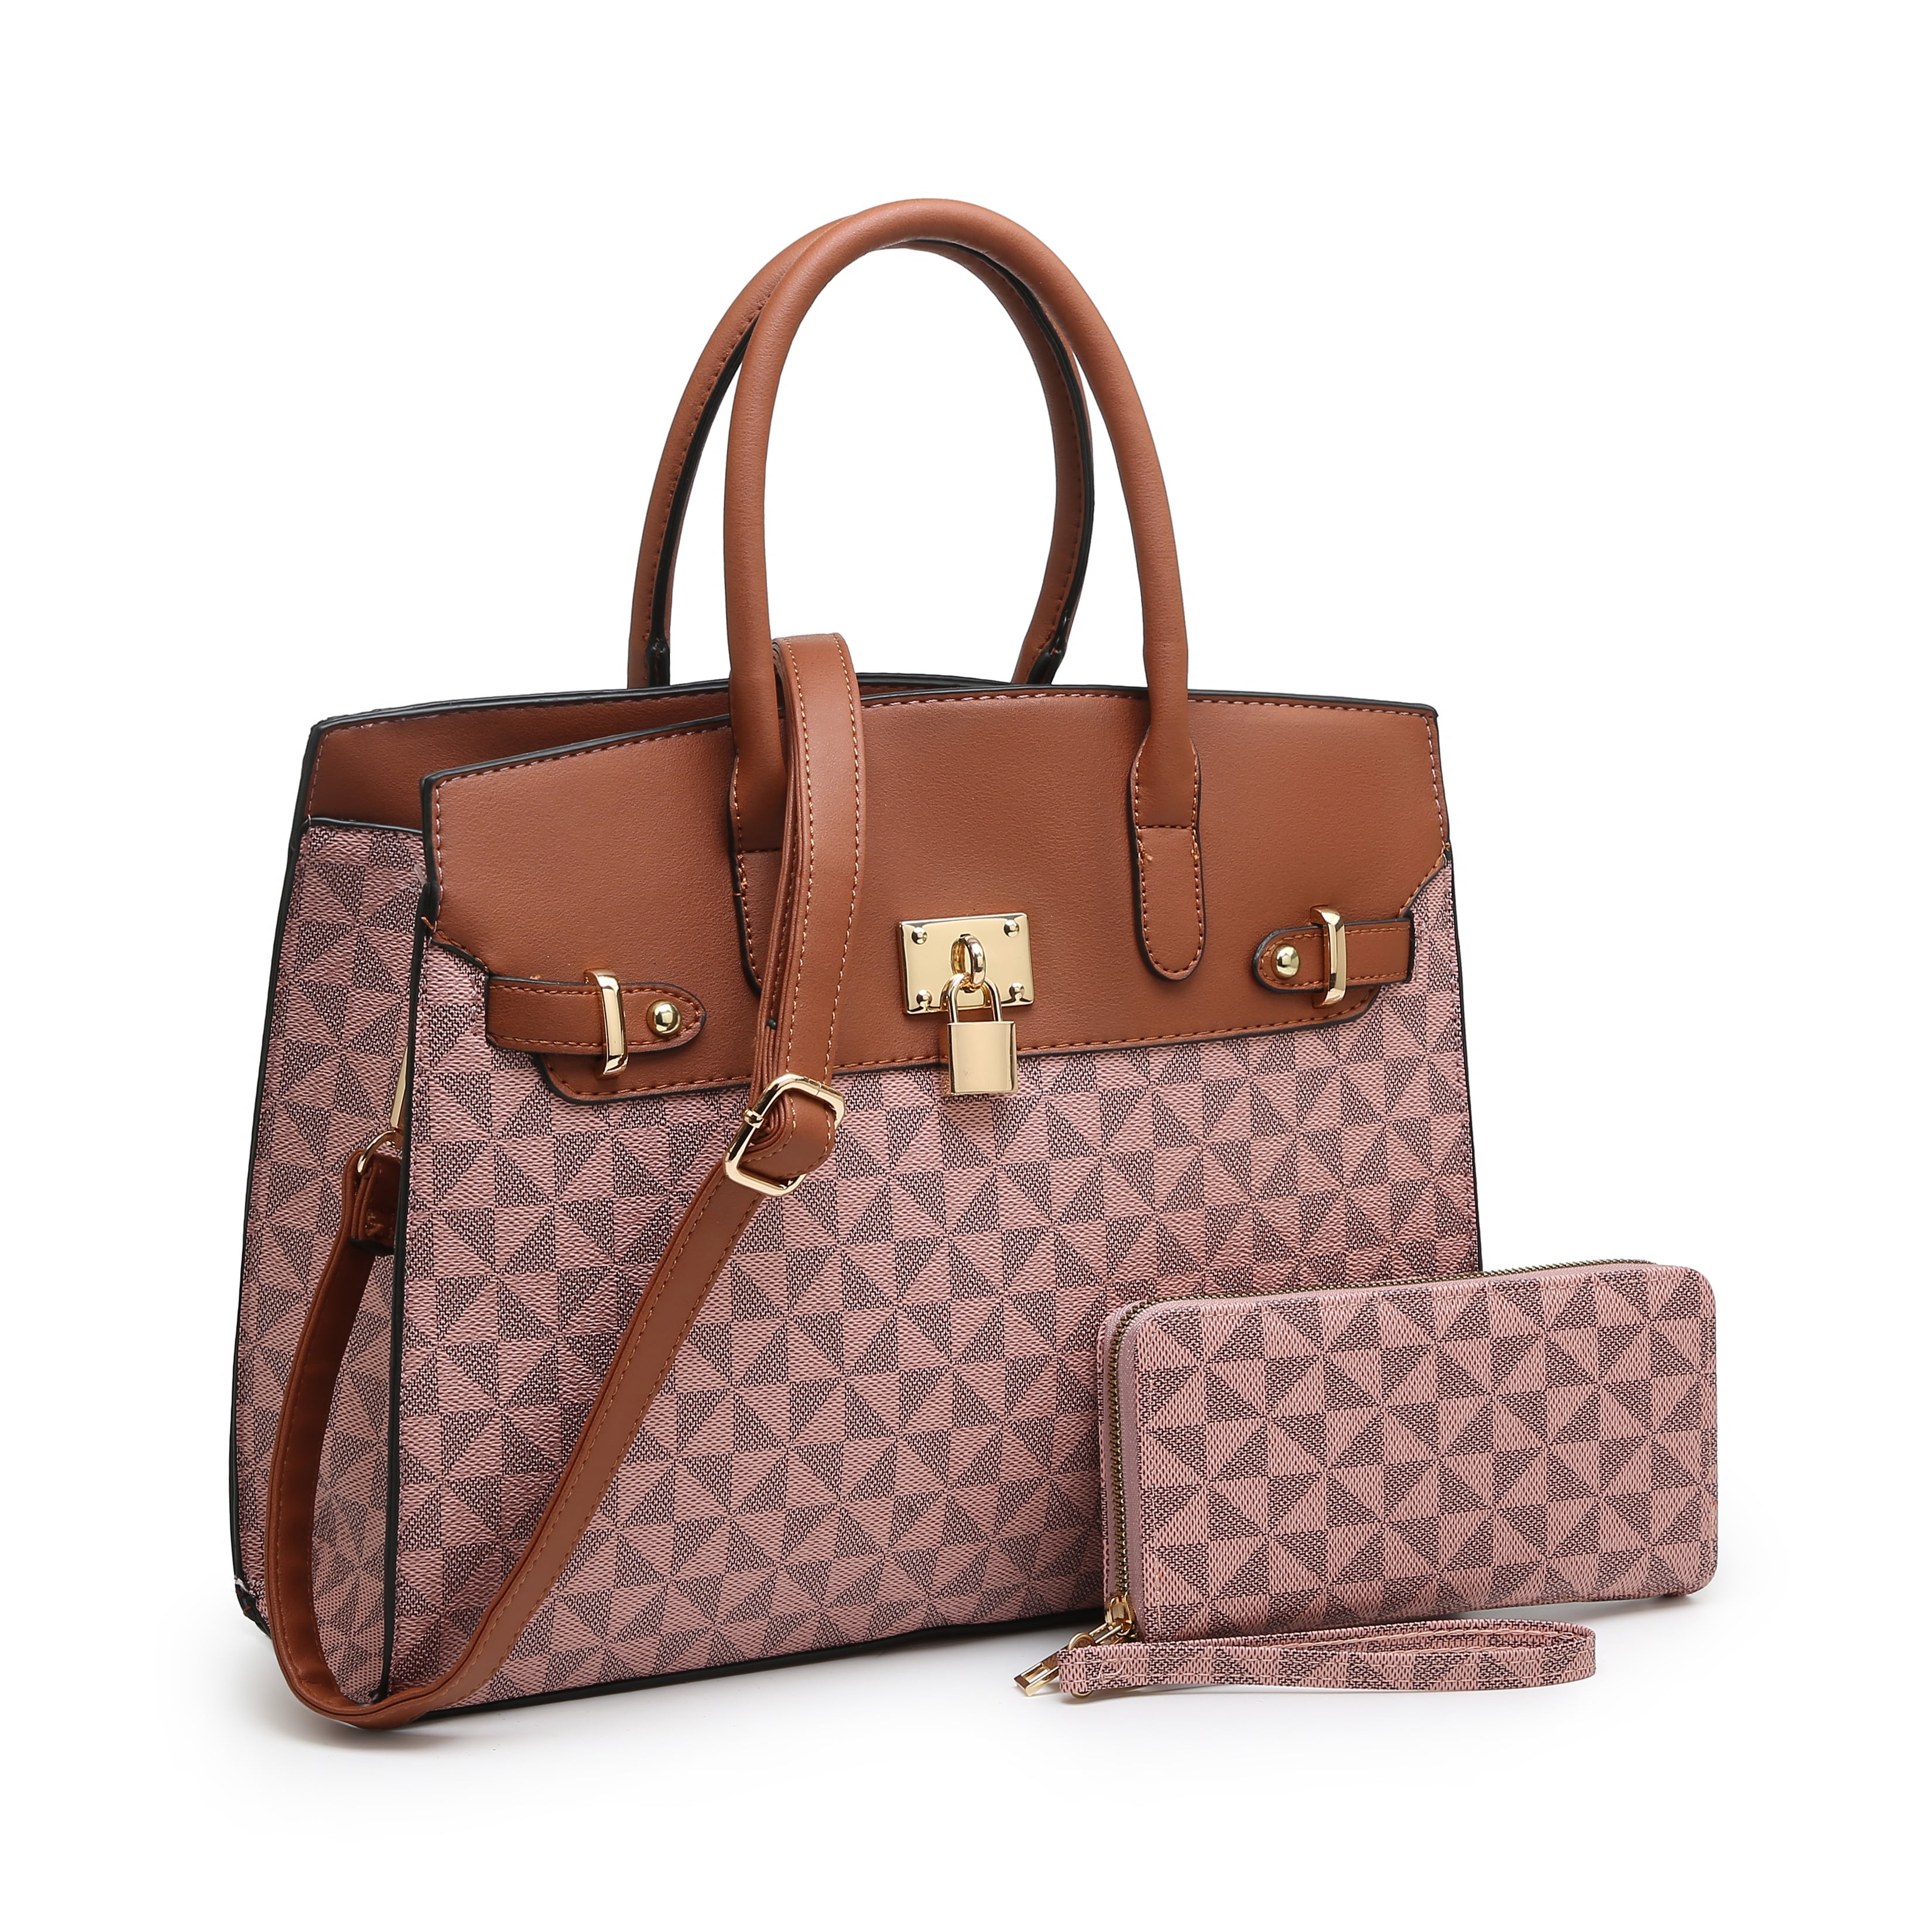 POPPY Women's Top Handle Satchel Handbags with Wallet Vegan Leather ...